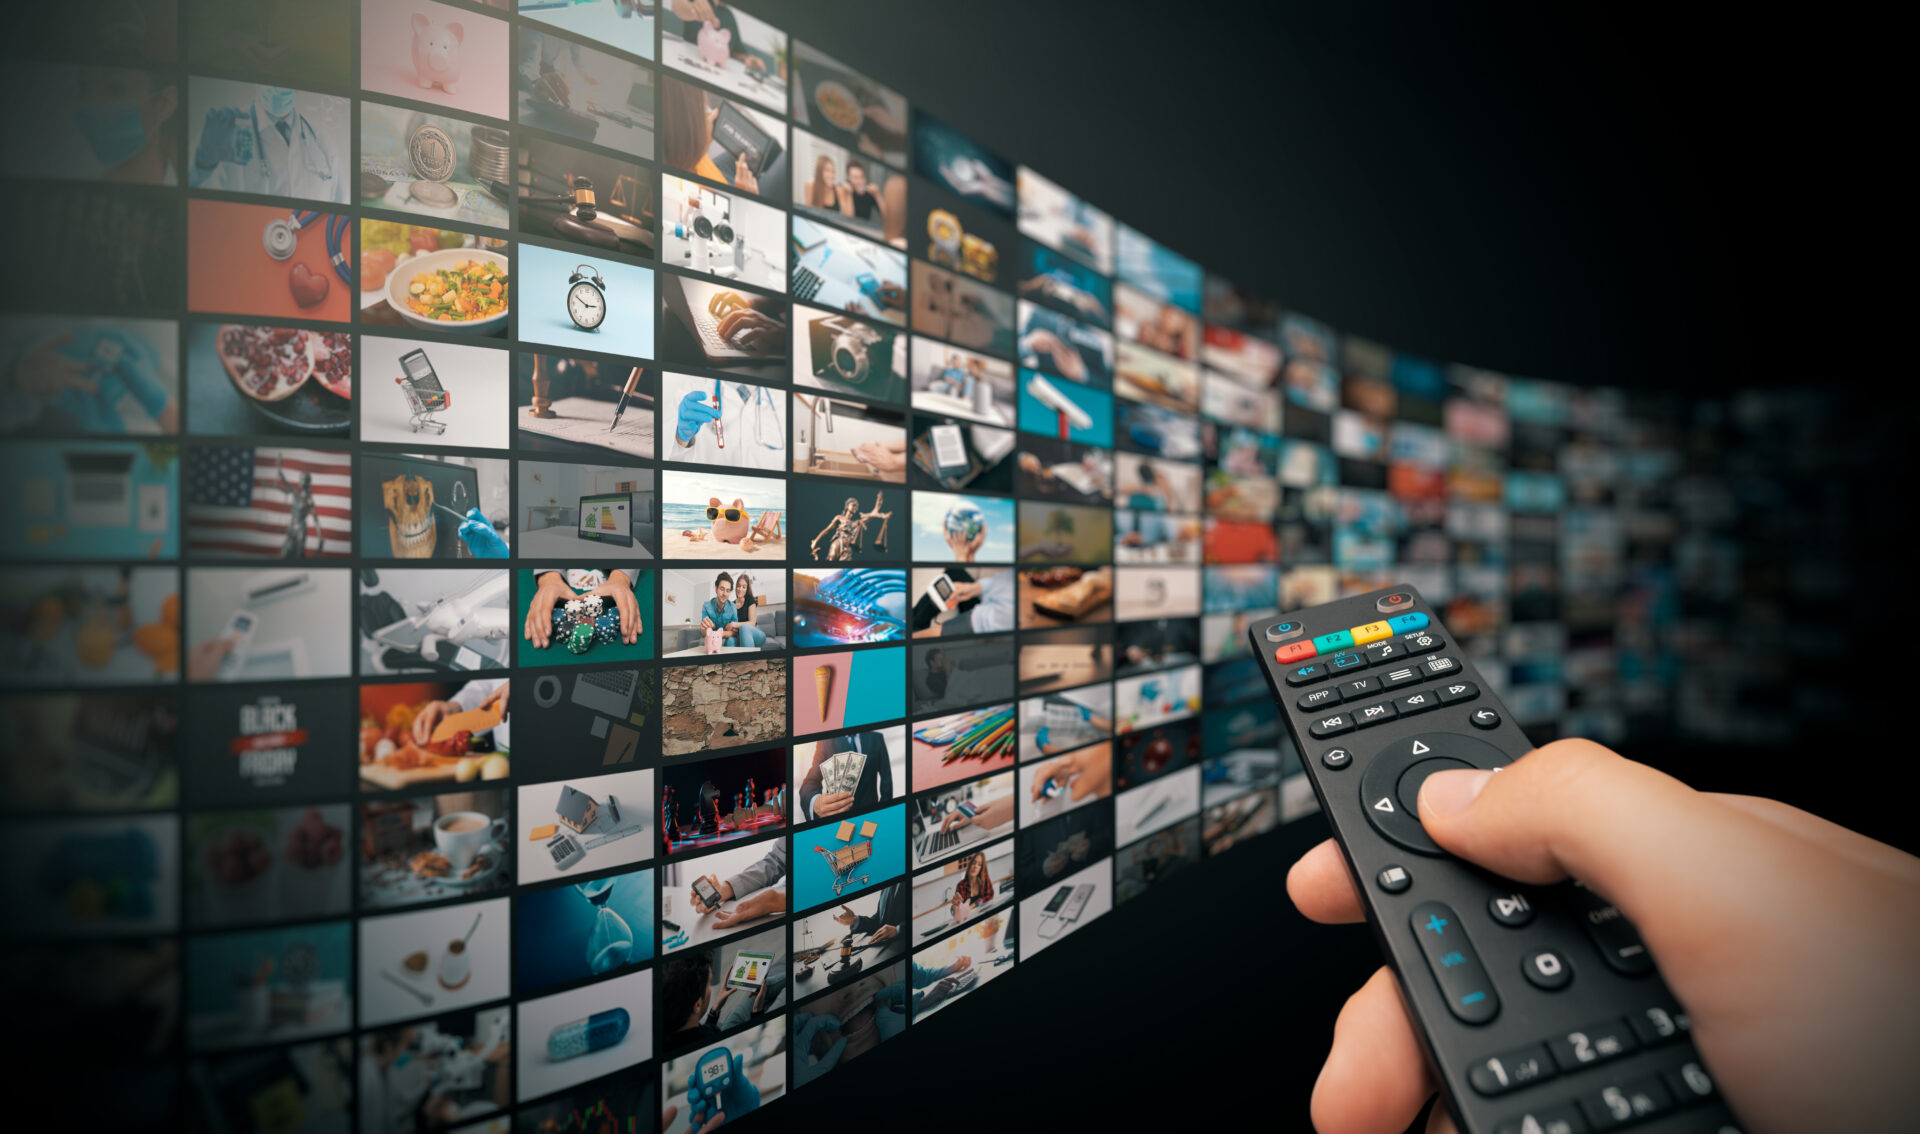 gratis buitenlandse tv zenders ontvangen is niet moeilijk met een vpn